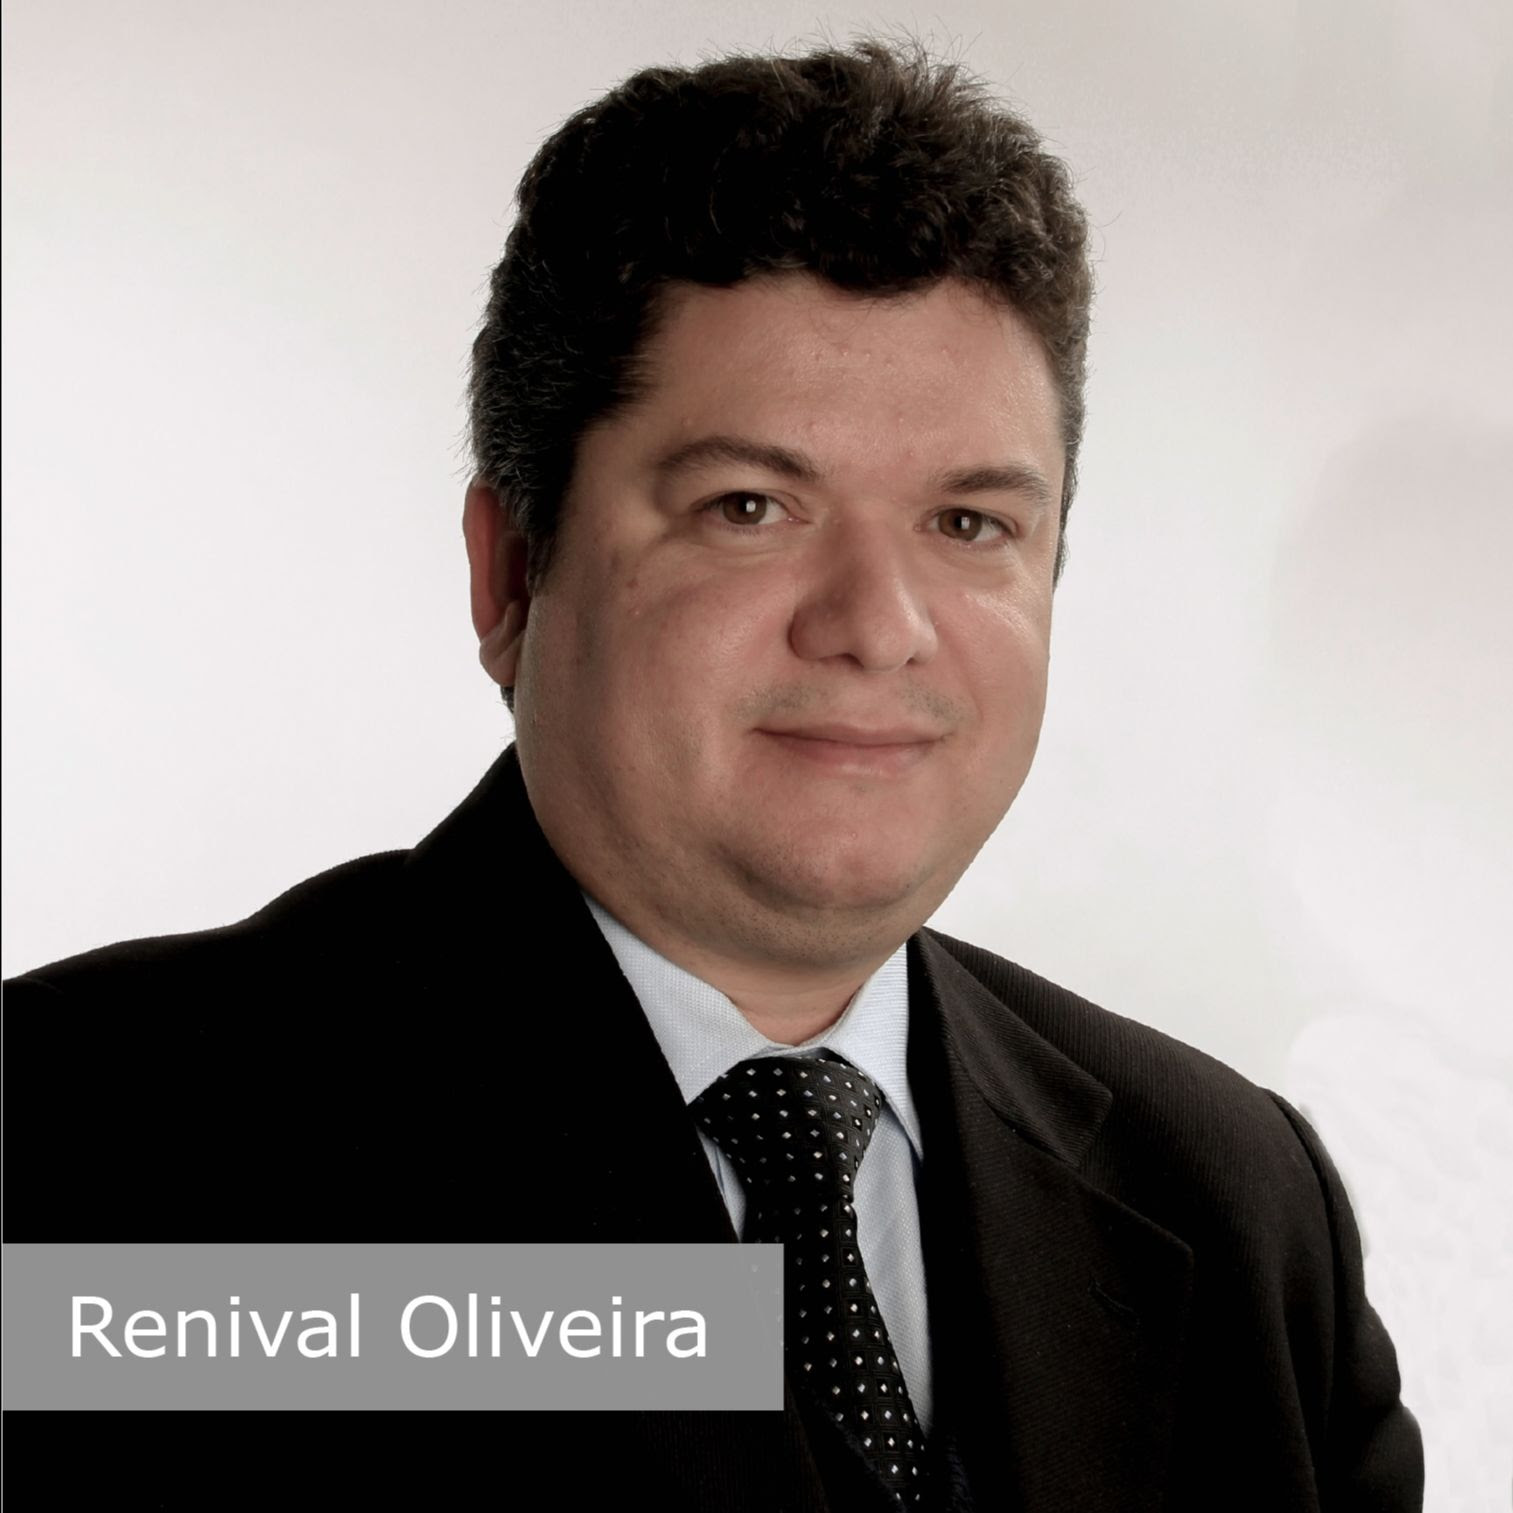 Renival Oliveira